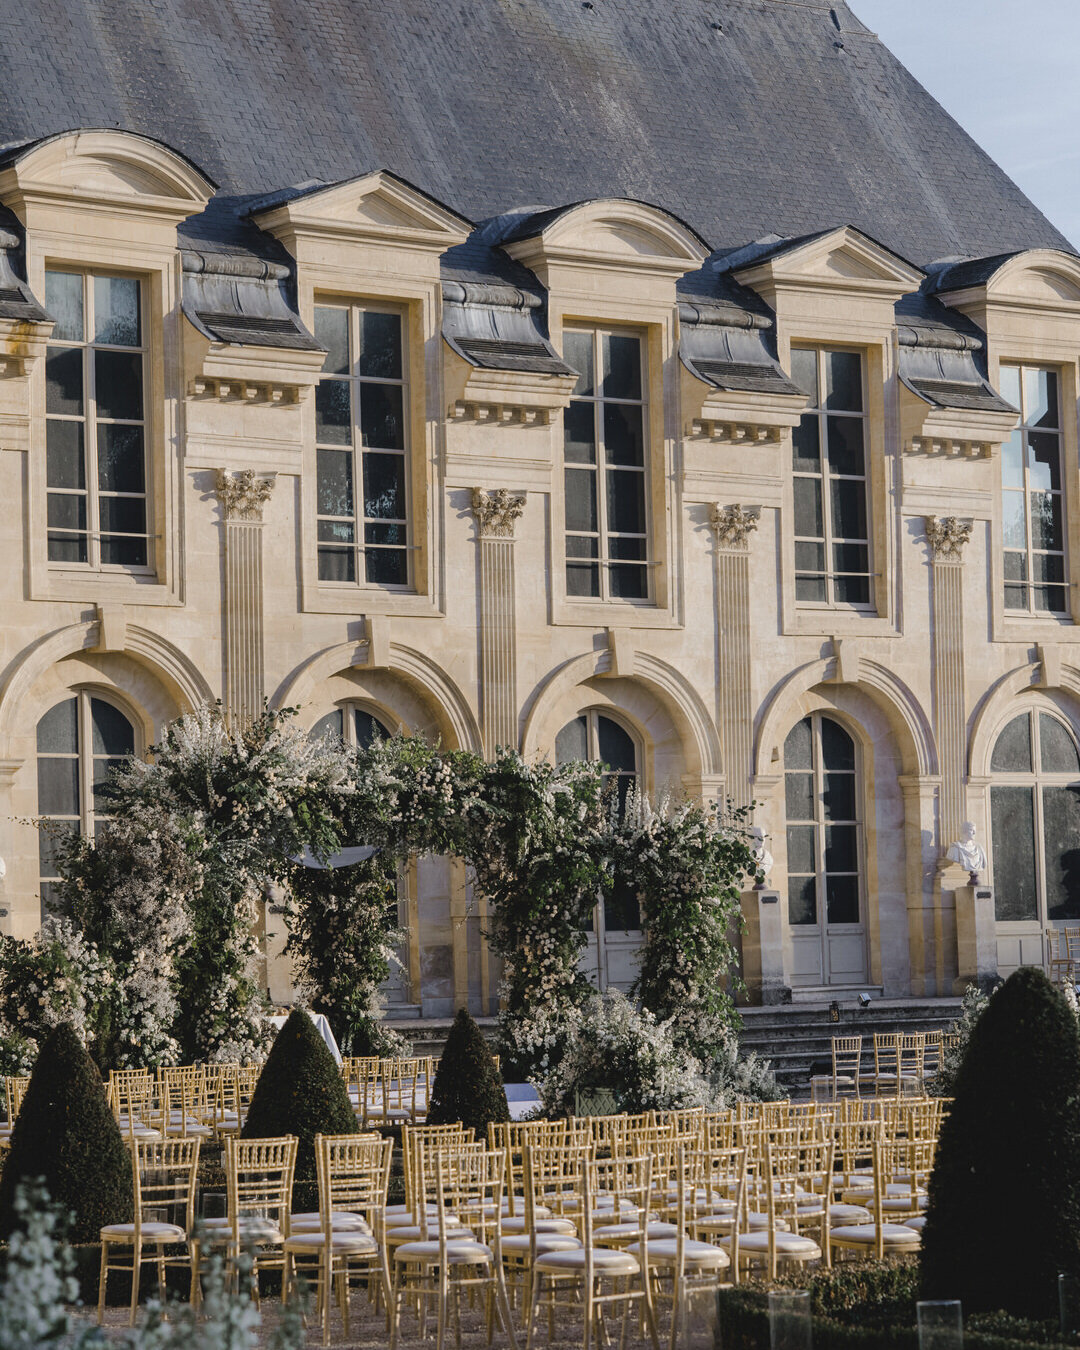 Paris Destination Wedding at Chateau de Chantilly by Alejandra Poupel Events arch and chateau de chantilly 